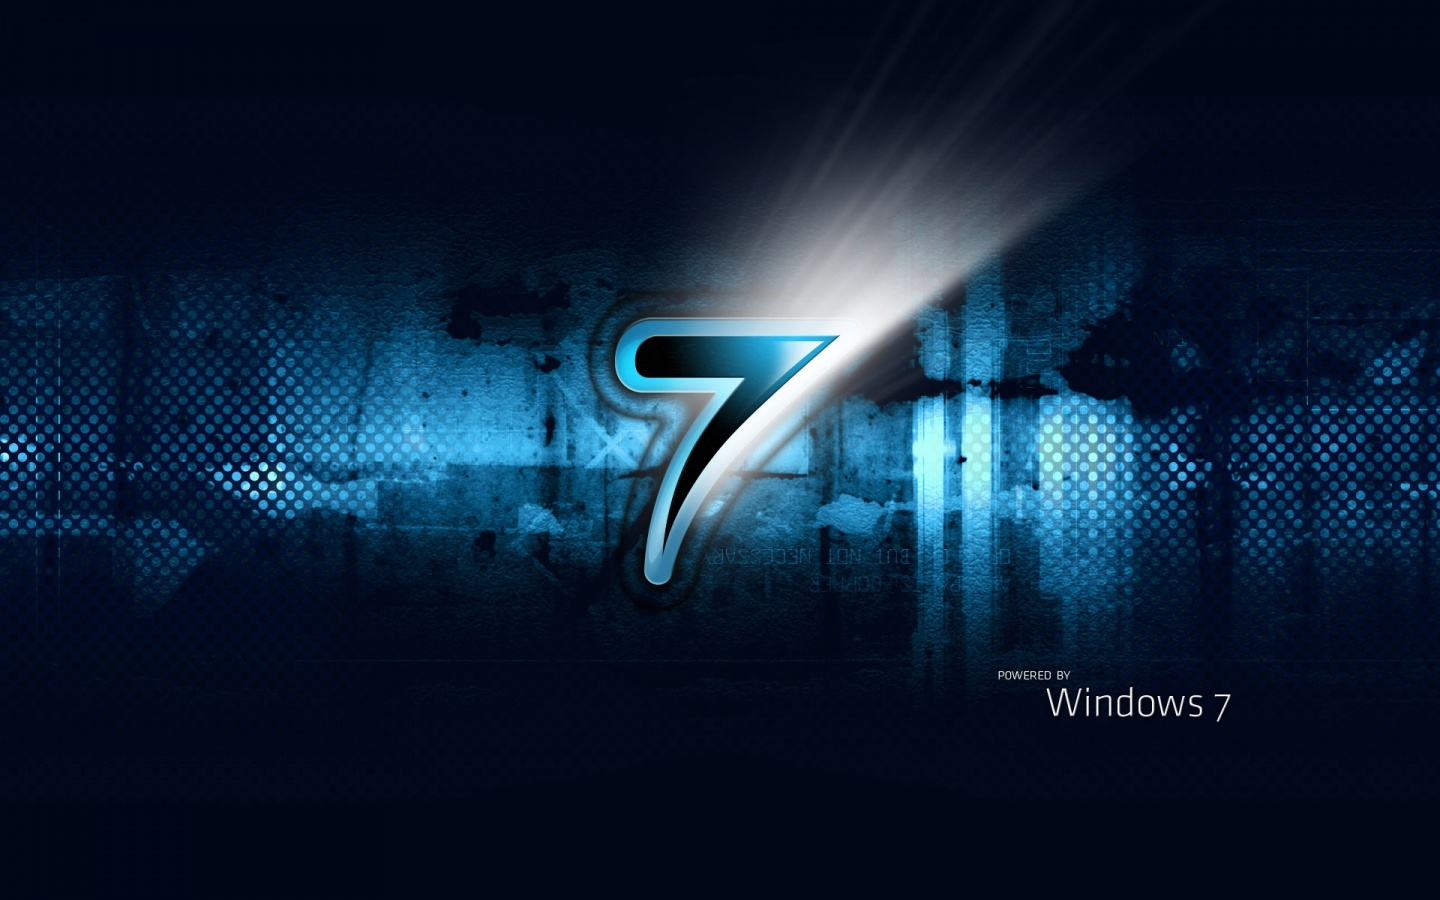 50+] Video Wallpaper for Windows 7 - WallpaperSafari